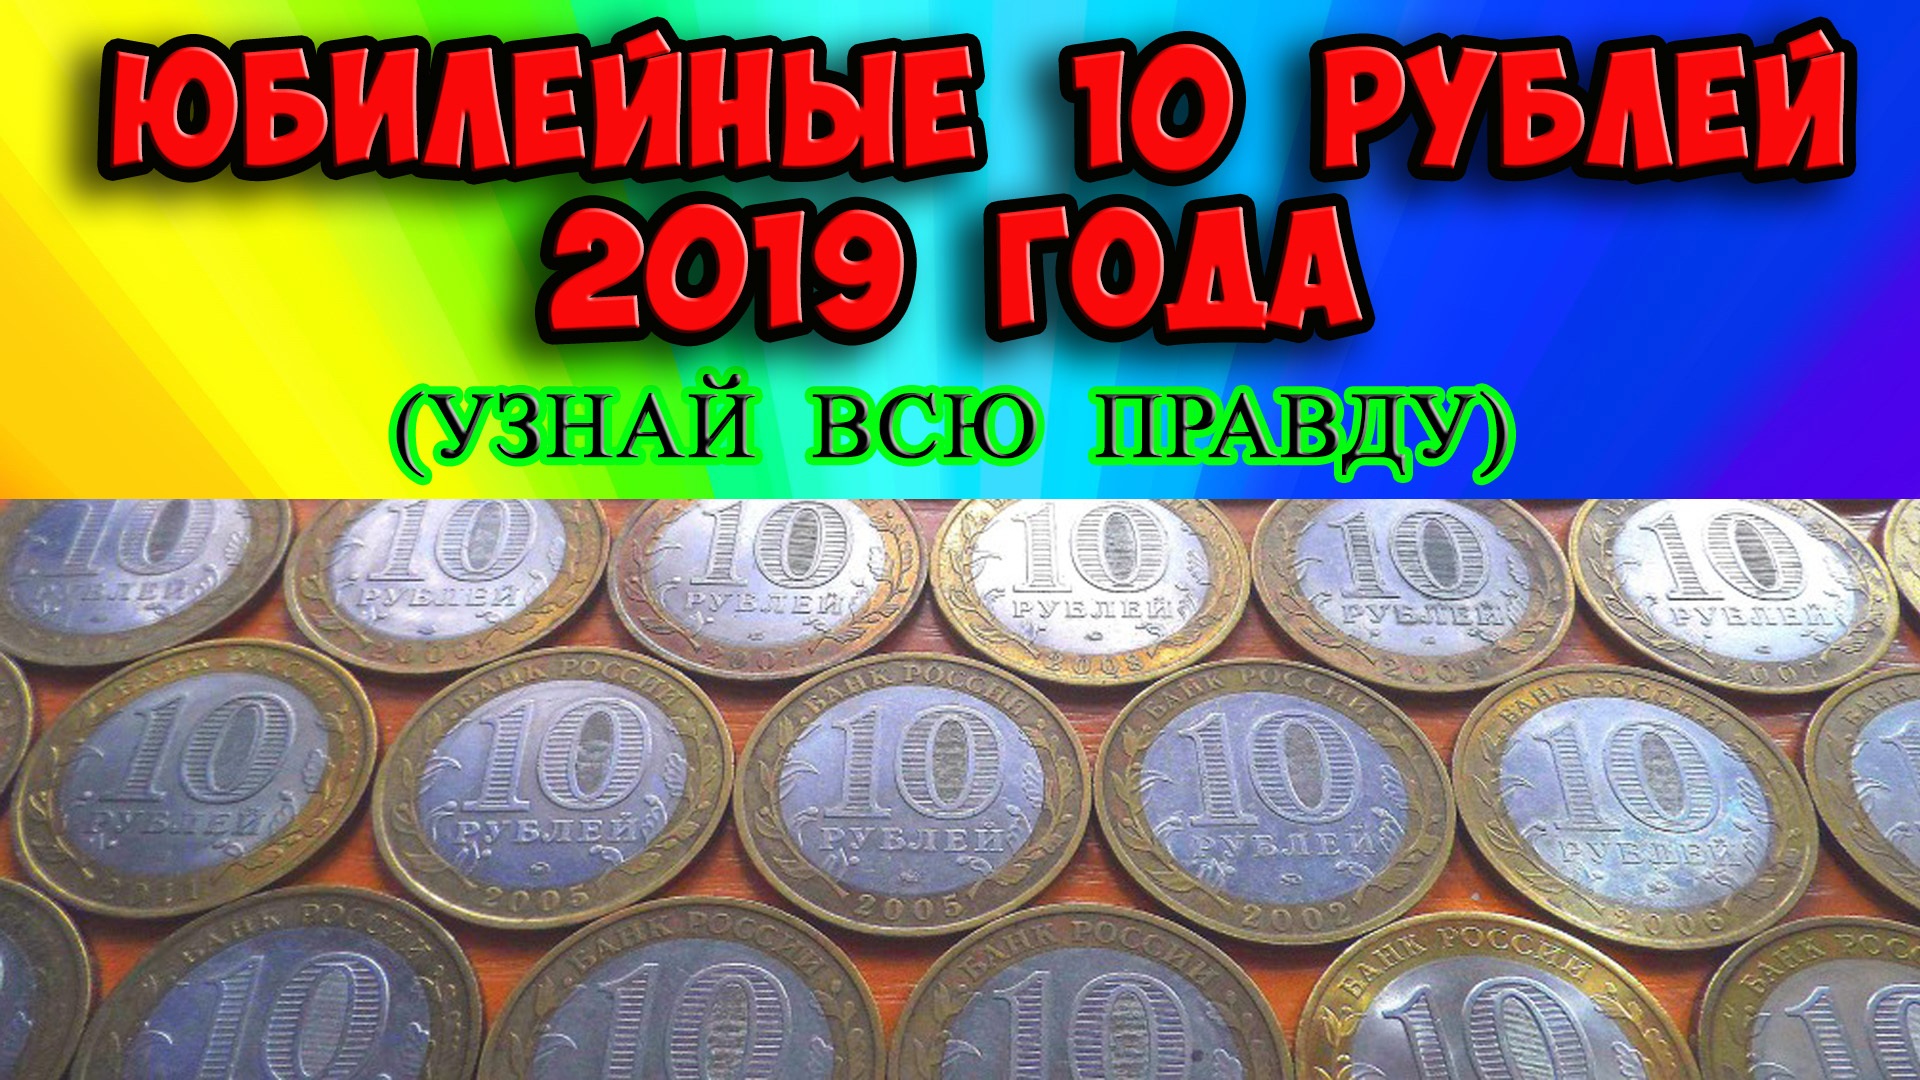 10 рублей 2019 года. Вся правда о юбилейных монетах!